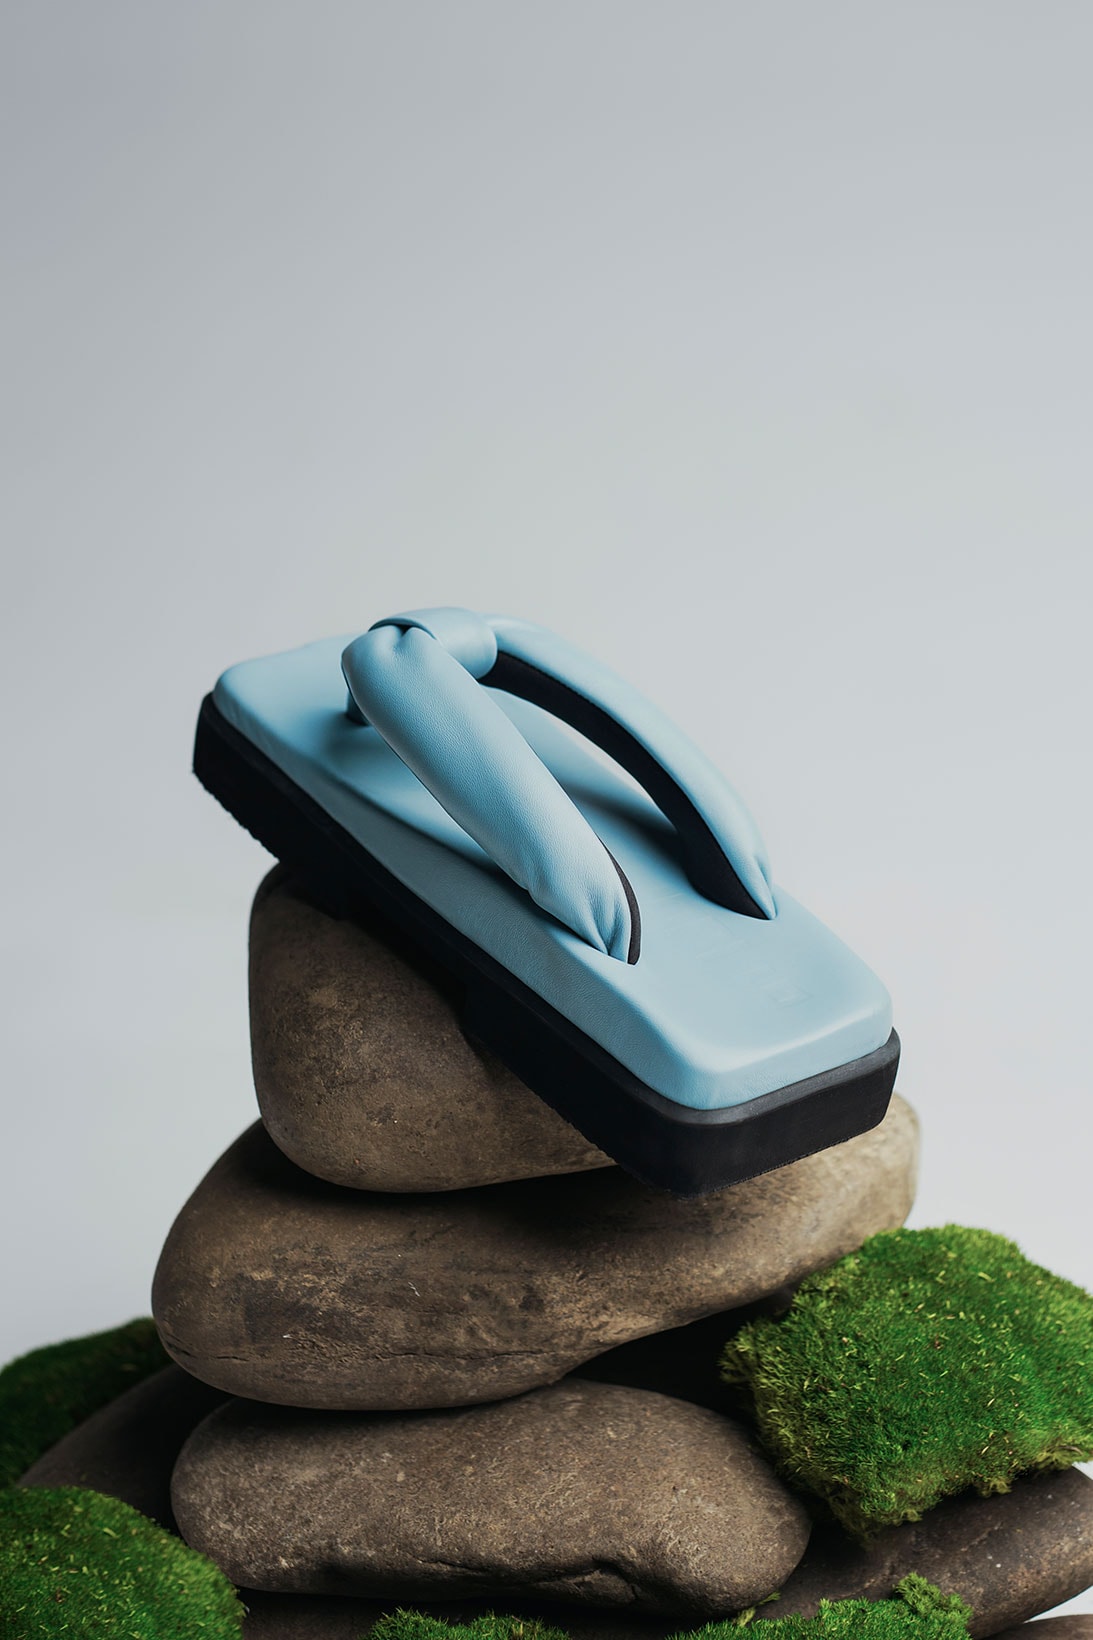 sinobi orthopedic vegan shoes spring summer ss21 campaign oxygen mask flip flop sandals